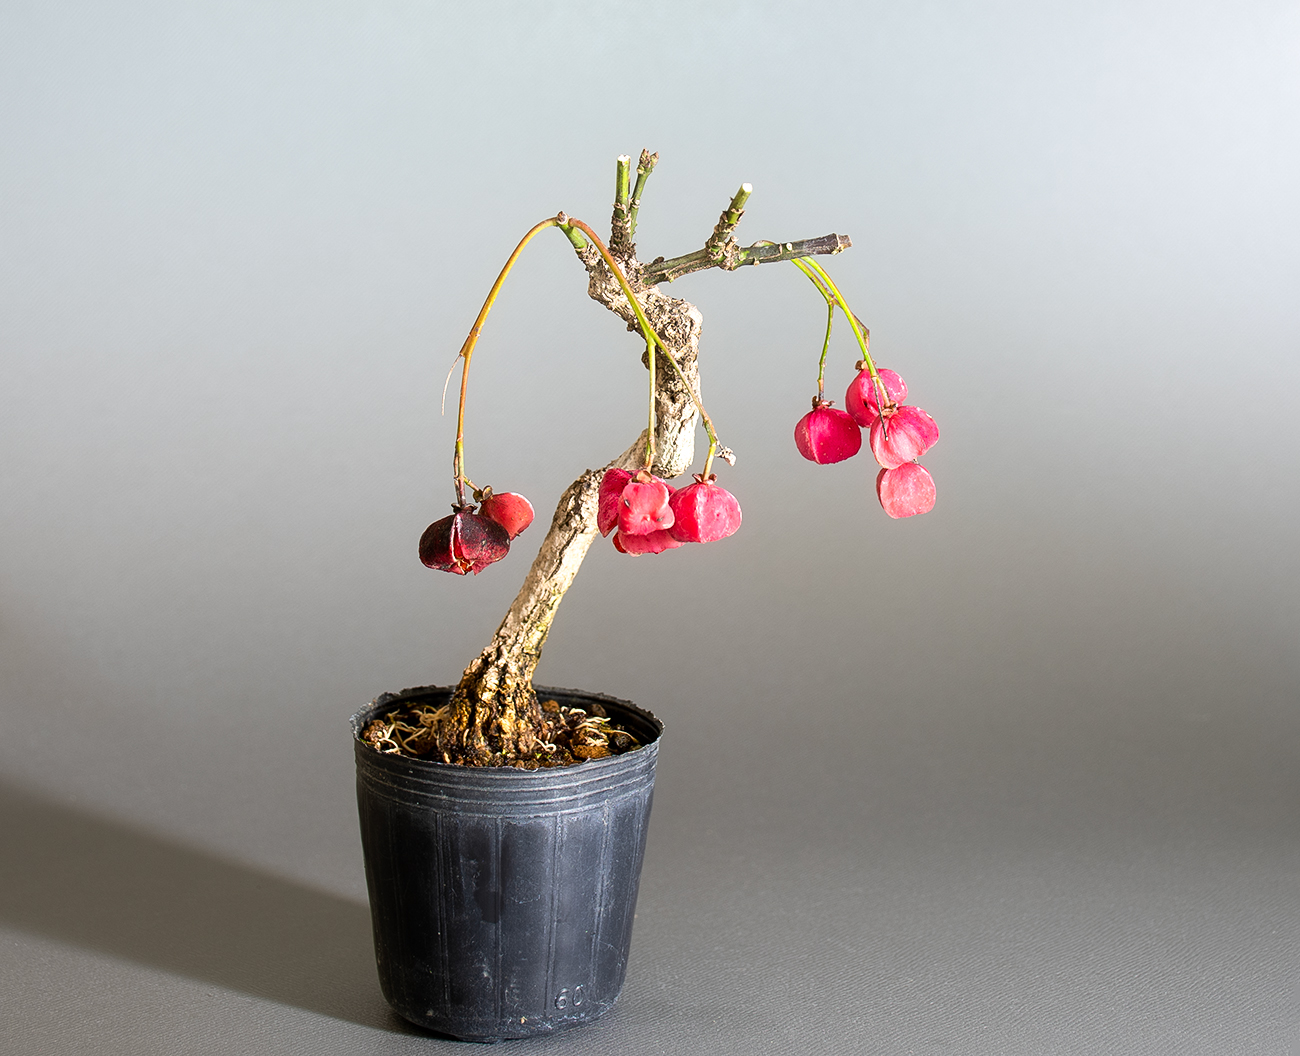 実もの盆栽・Mimono bonsai（実を楽しむ盆栽）の成長記録と育て方・作り方・手入れの仕方を紹介しています。